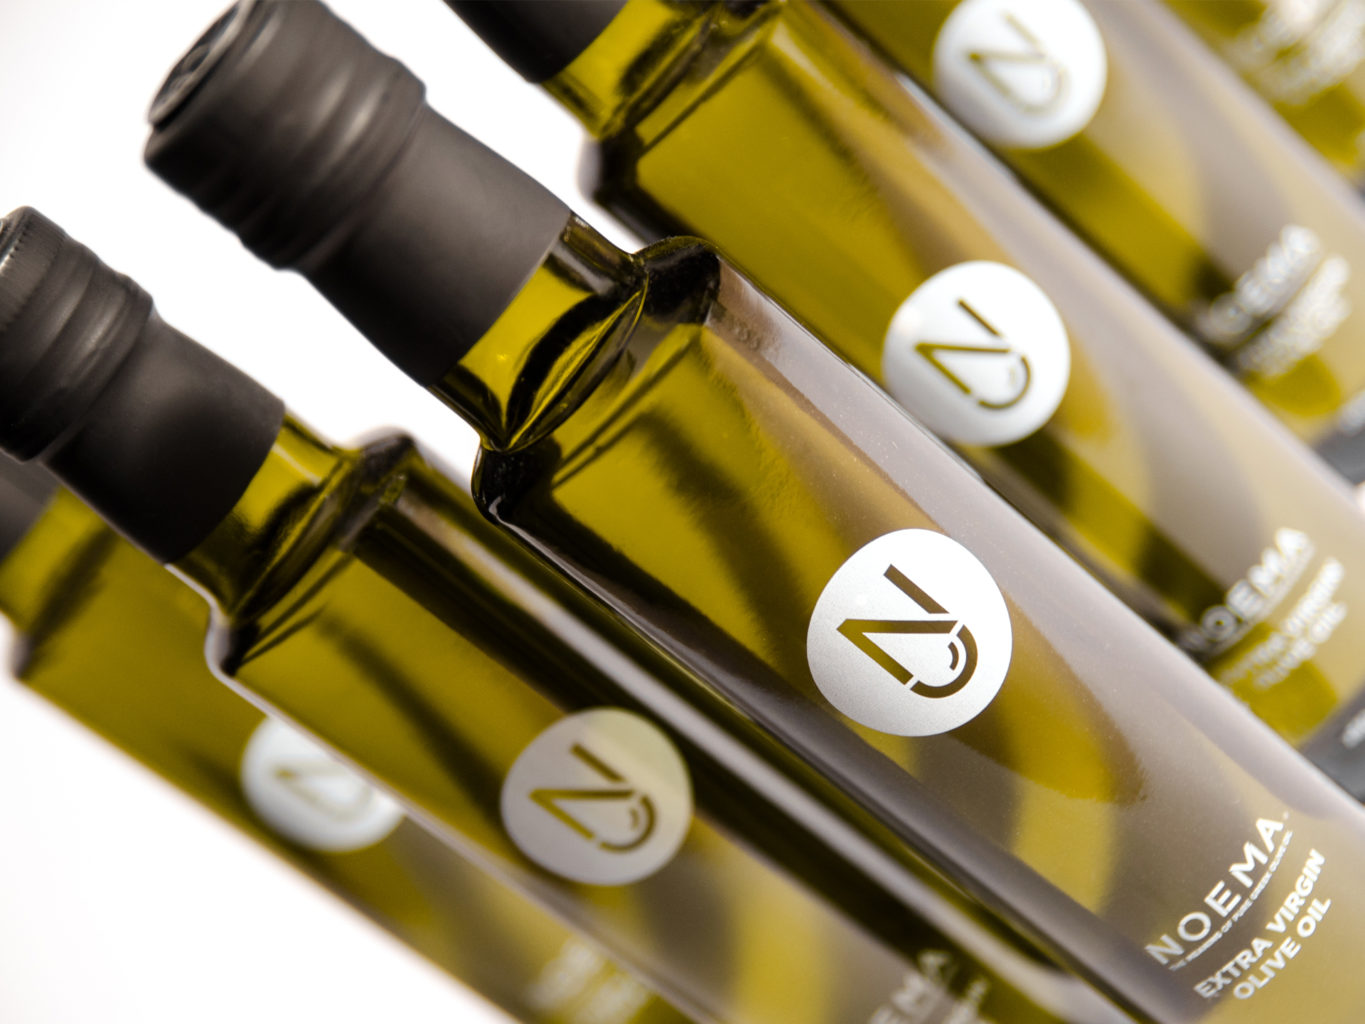 Noema Extra Virgin Olive Oil packaging